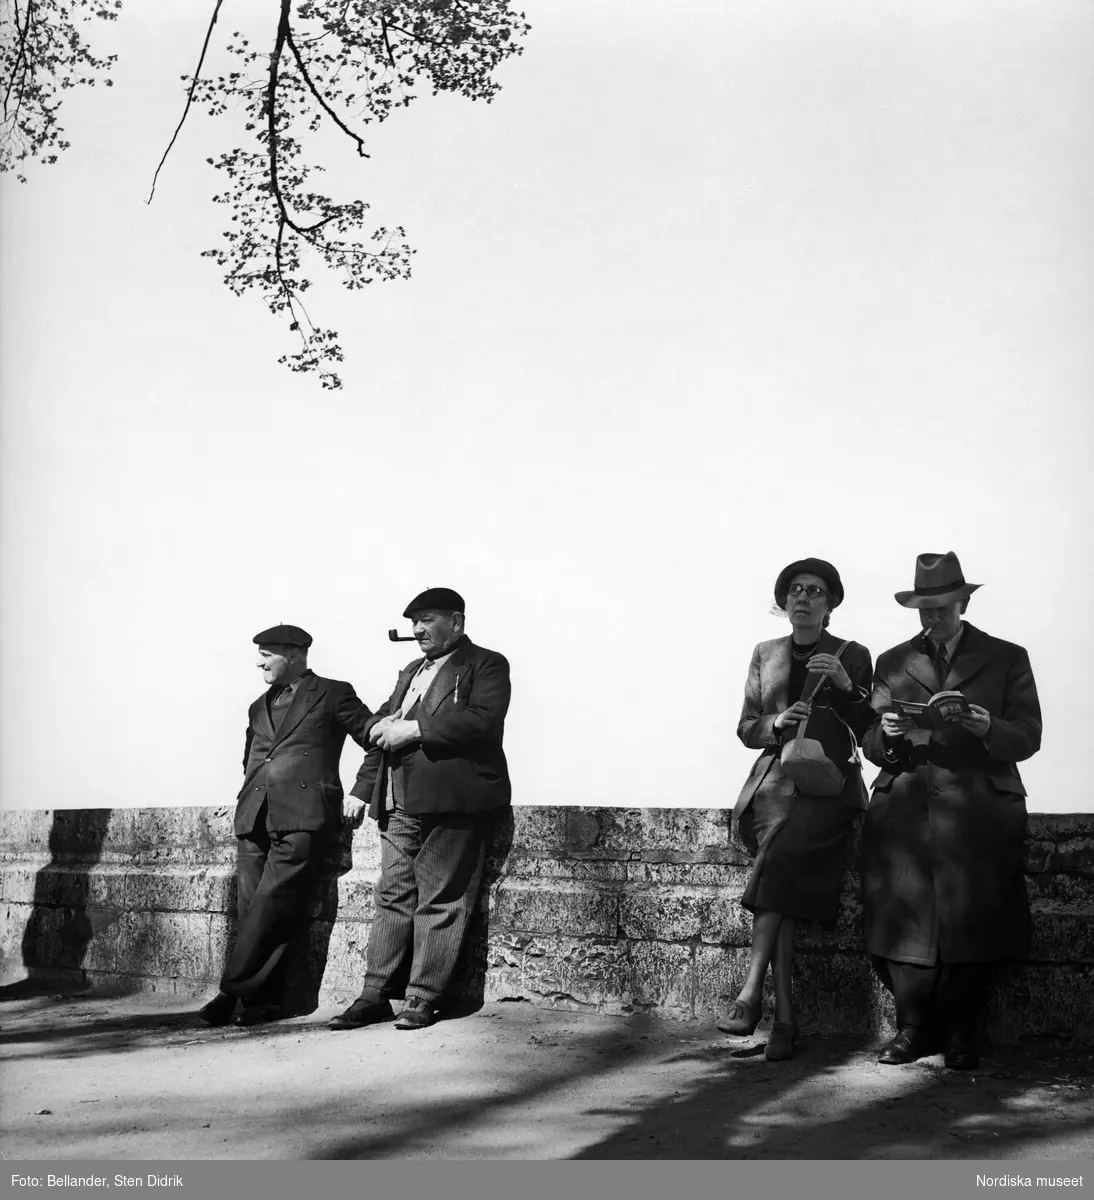 Två äldre män med basker på huvudet och ett par i övre medelåldern står lutade mot en stenmur.
Mannen har en cigarett i munnen och bläddrar i en guidebok om Chartres.